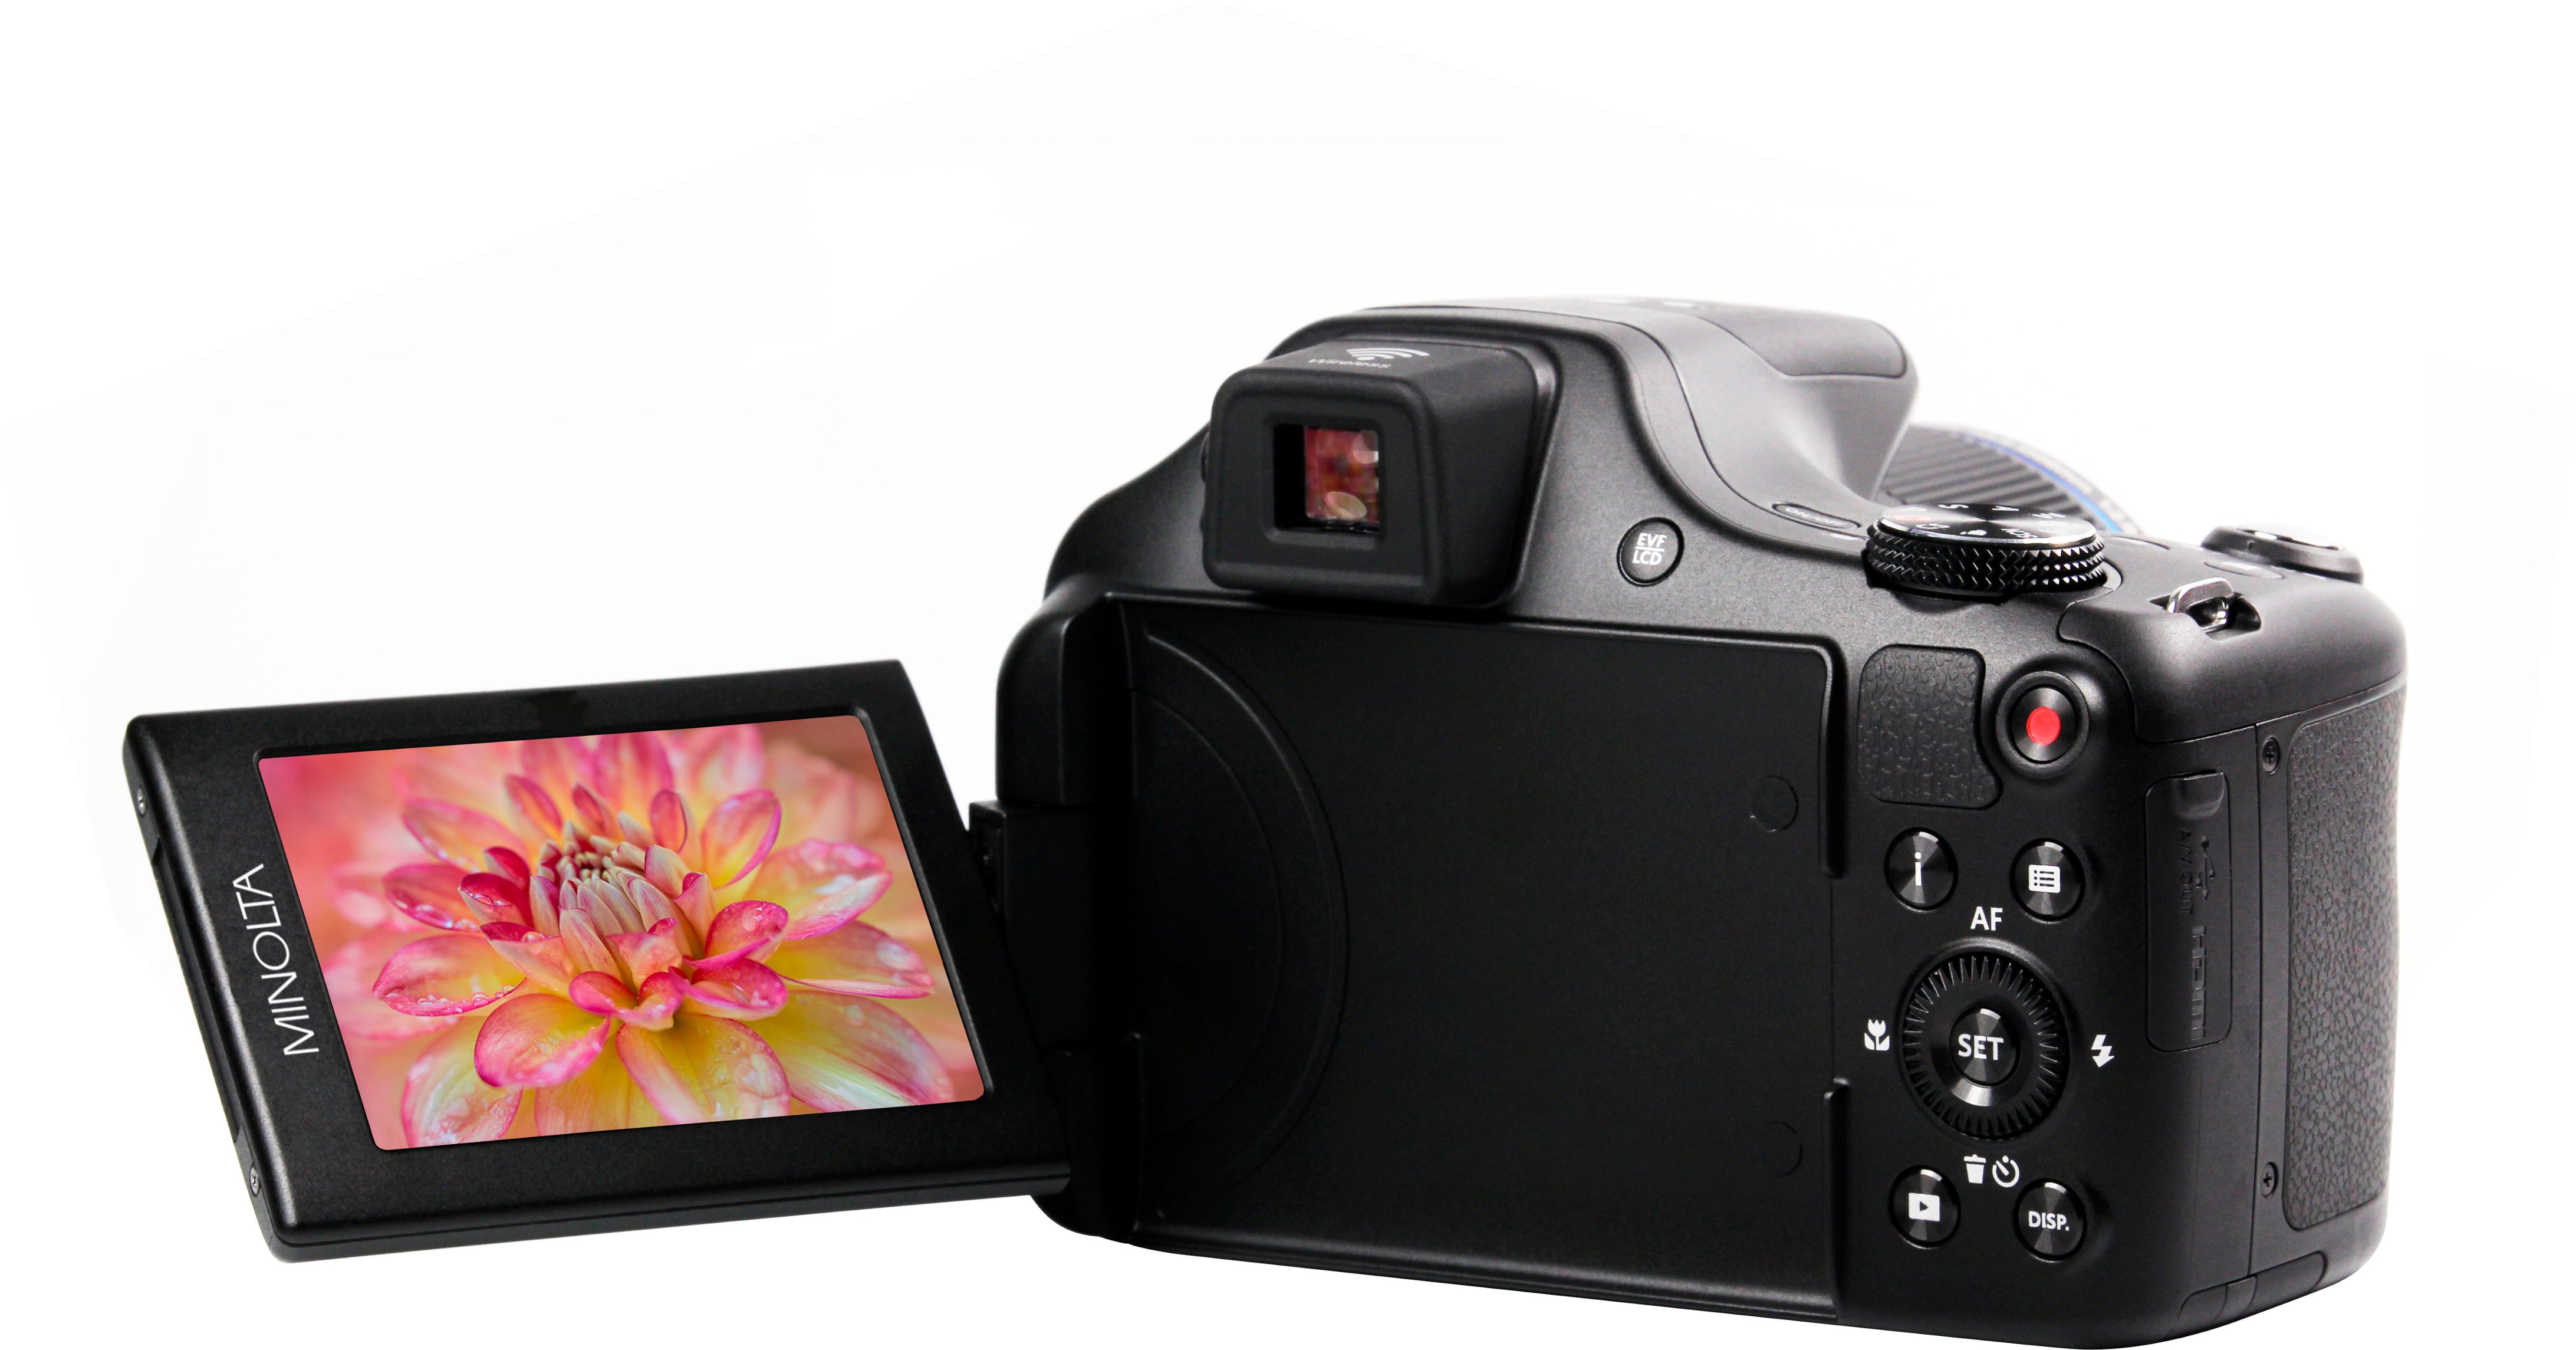 Minolta ProShot MN67Z 20.0 Megapixel Digital Camera Black MN67Z-BK 